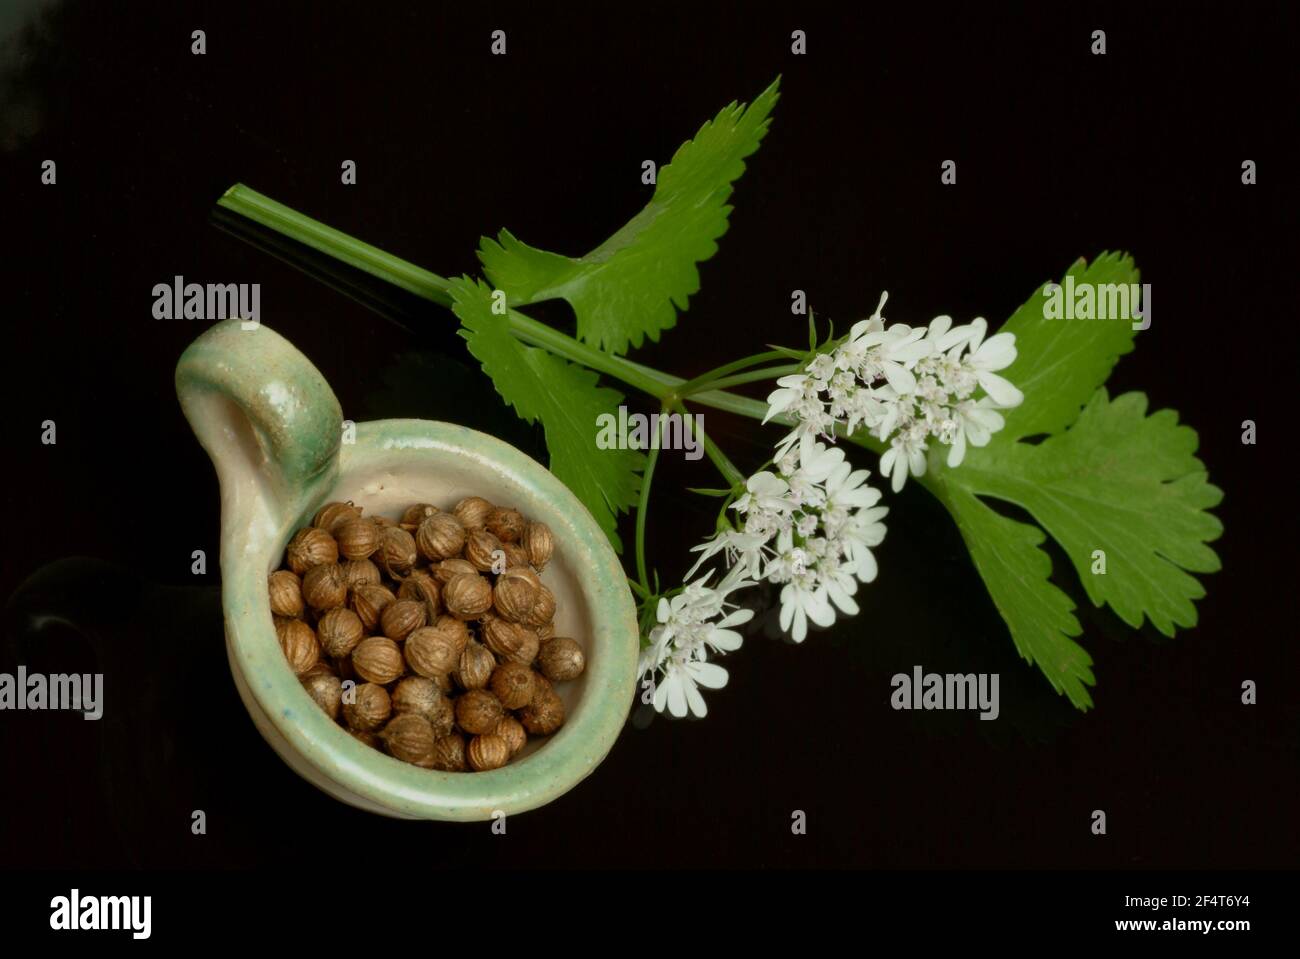 Koriander, Coriandrum sativum, Pflanzenarten aus der Familie der  Umbelliferae, als Gewürz- und Heilpflanze verwendet / Echter Koriander,  Coriandrum sativum, P Stockfotografie - Alamy